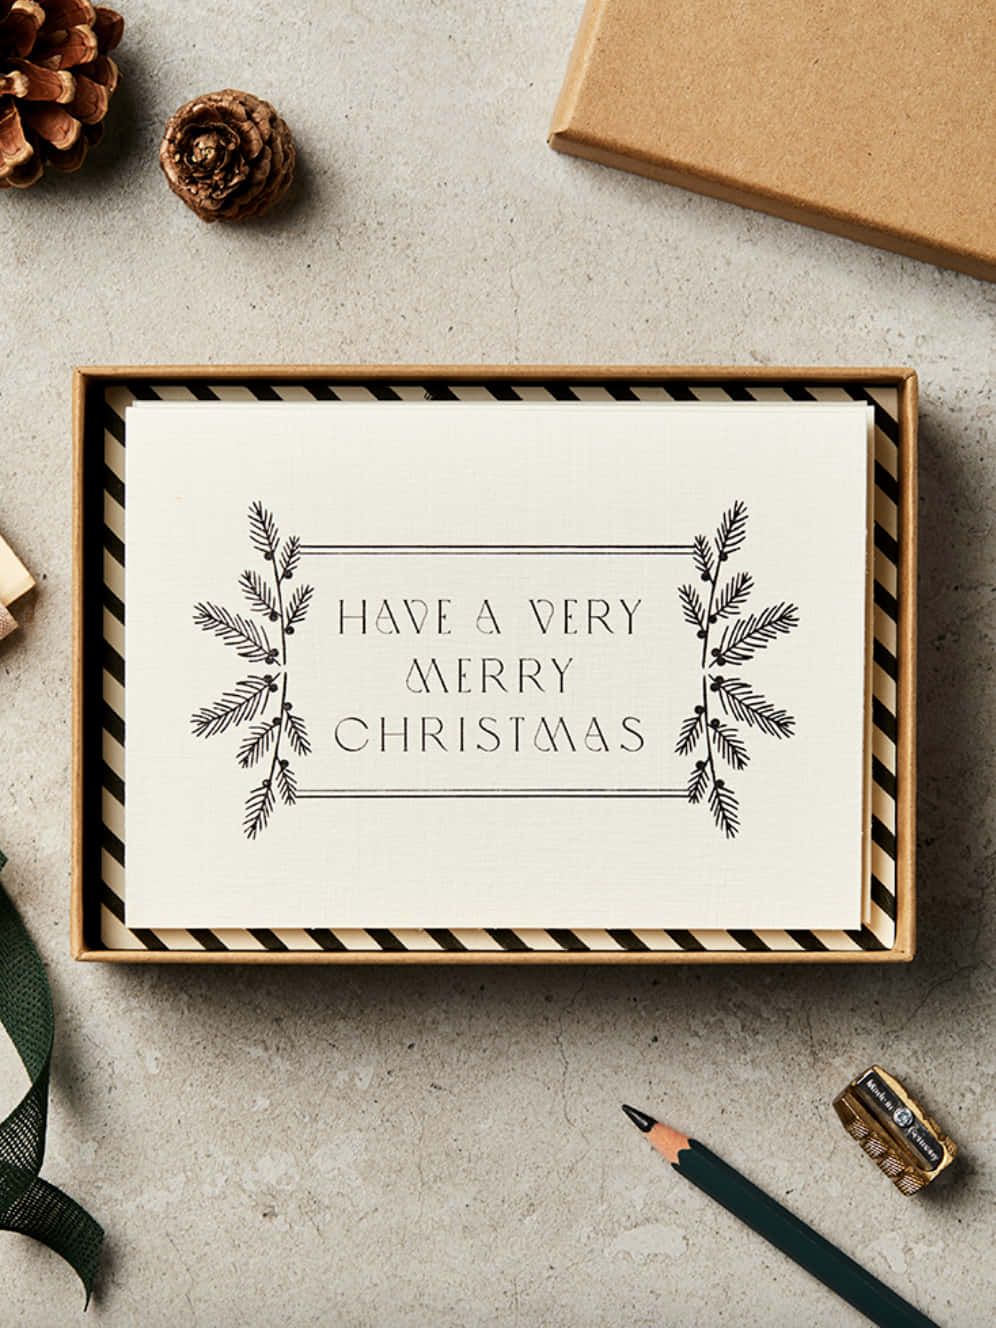 Umacaixa Com Um Cartão De Natal E Um Cone De Pinheiro.